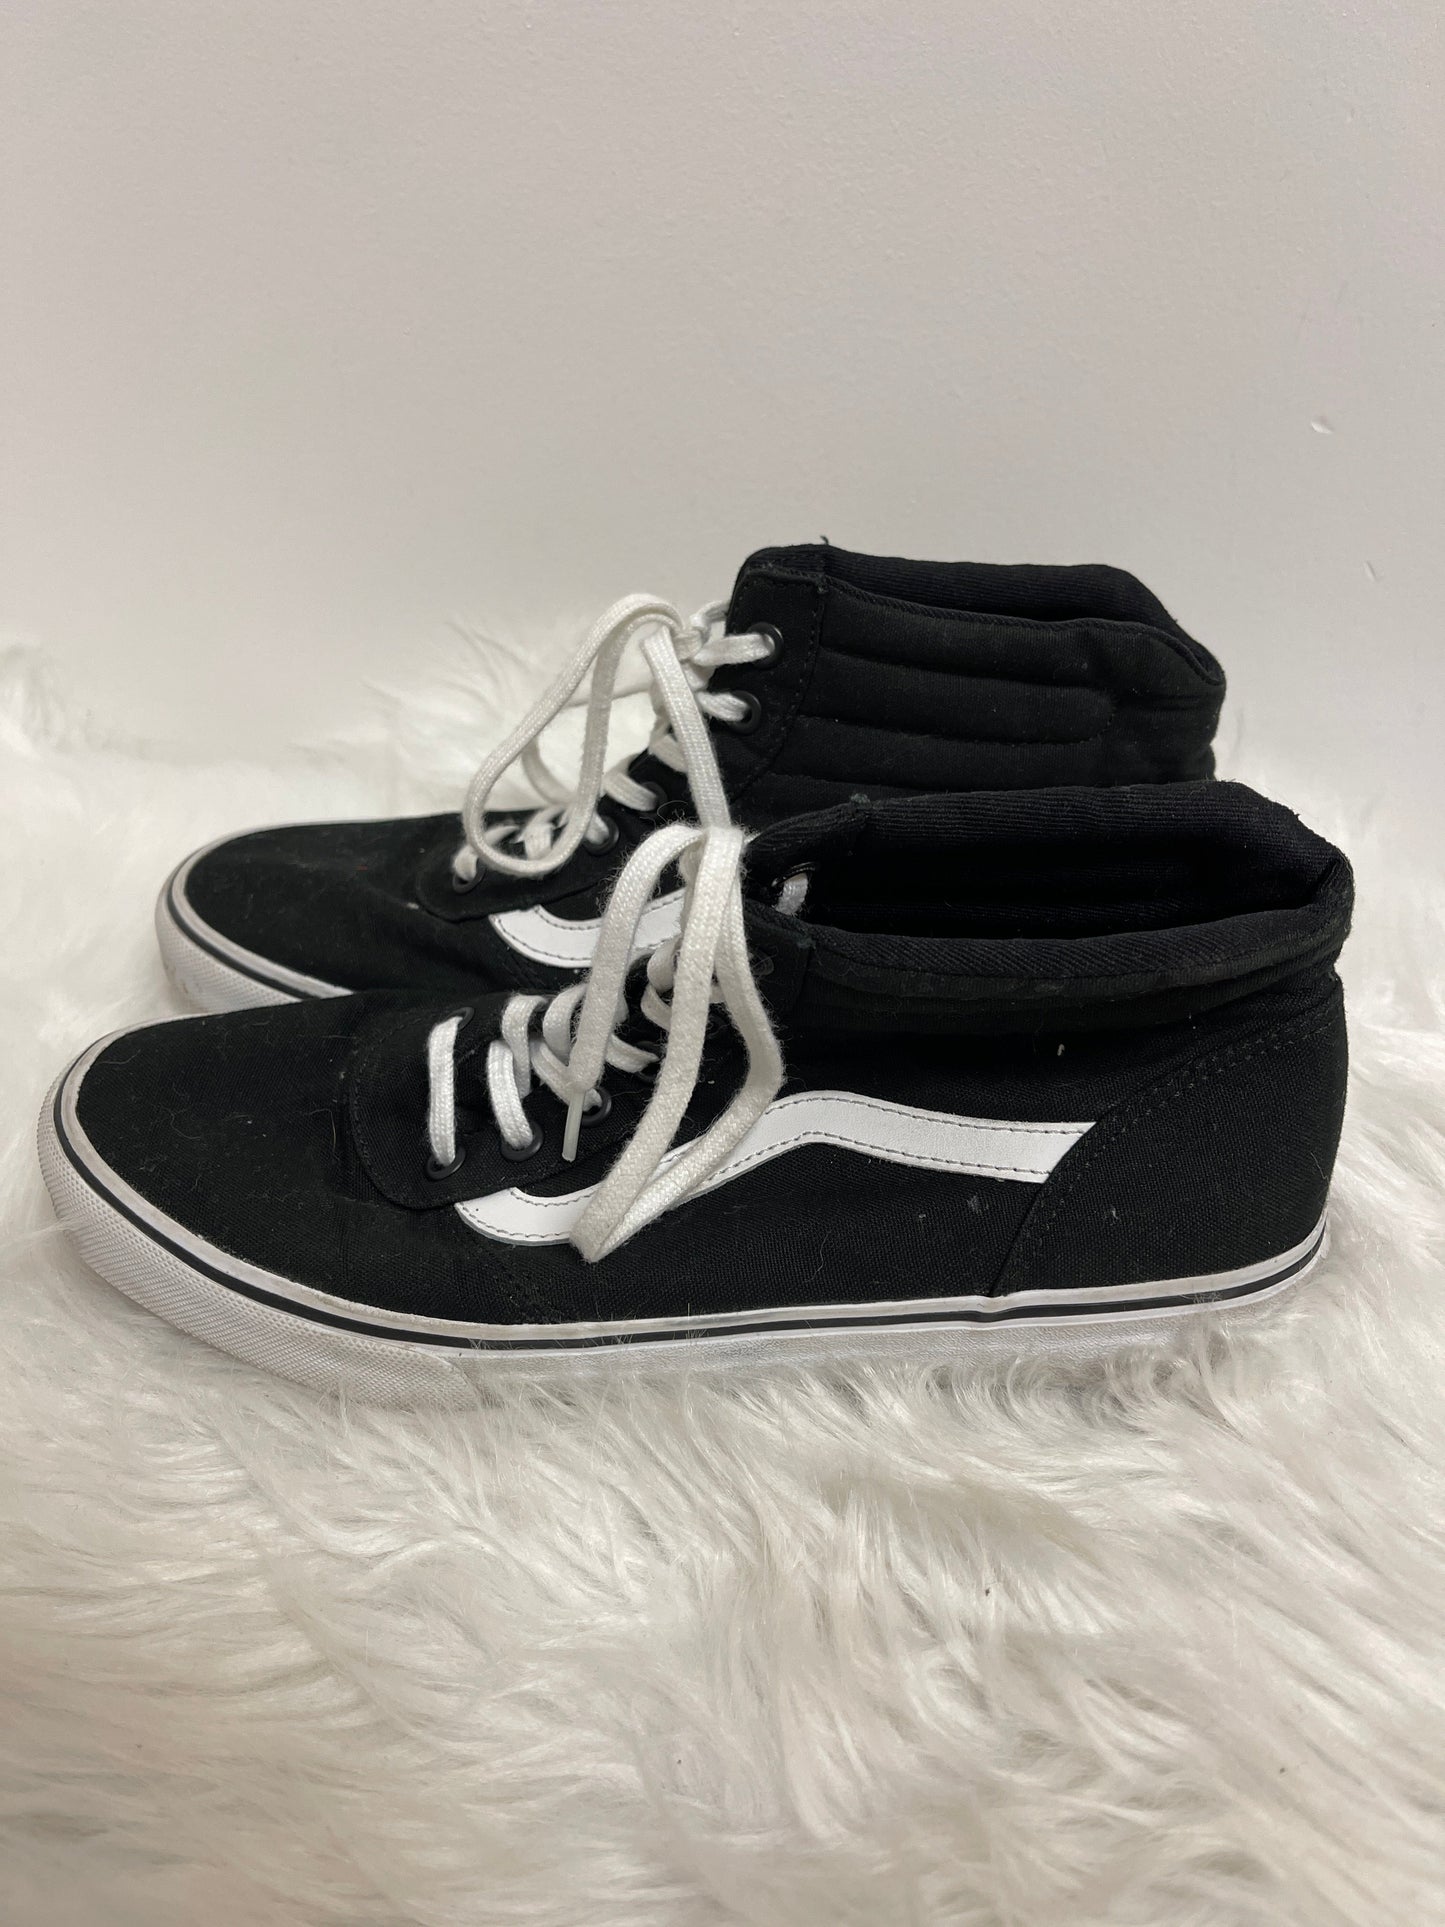 Black Shoes Sneakers Vans, Size 8